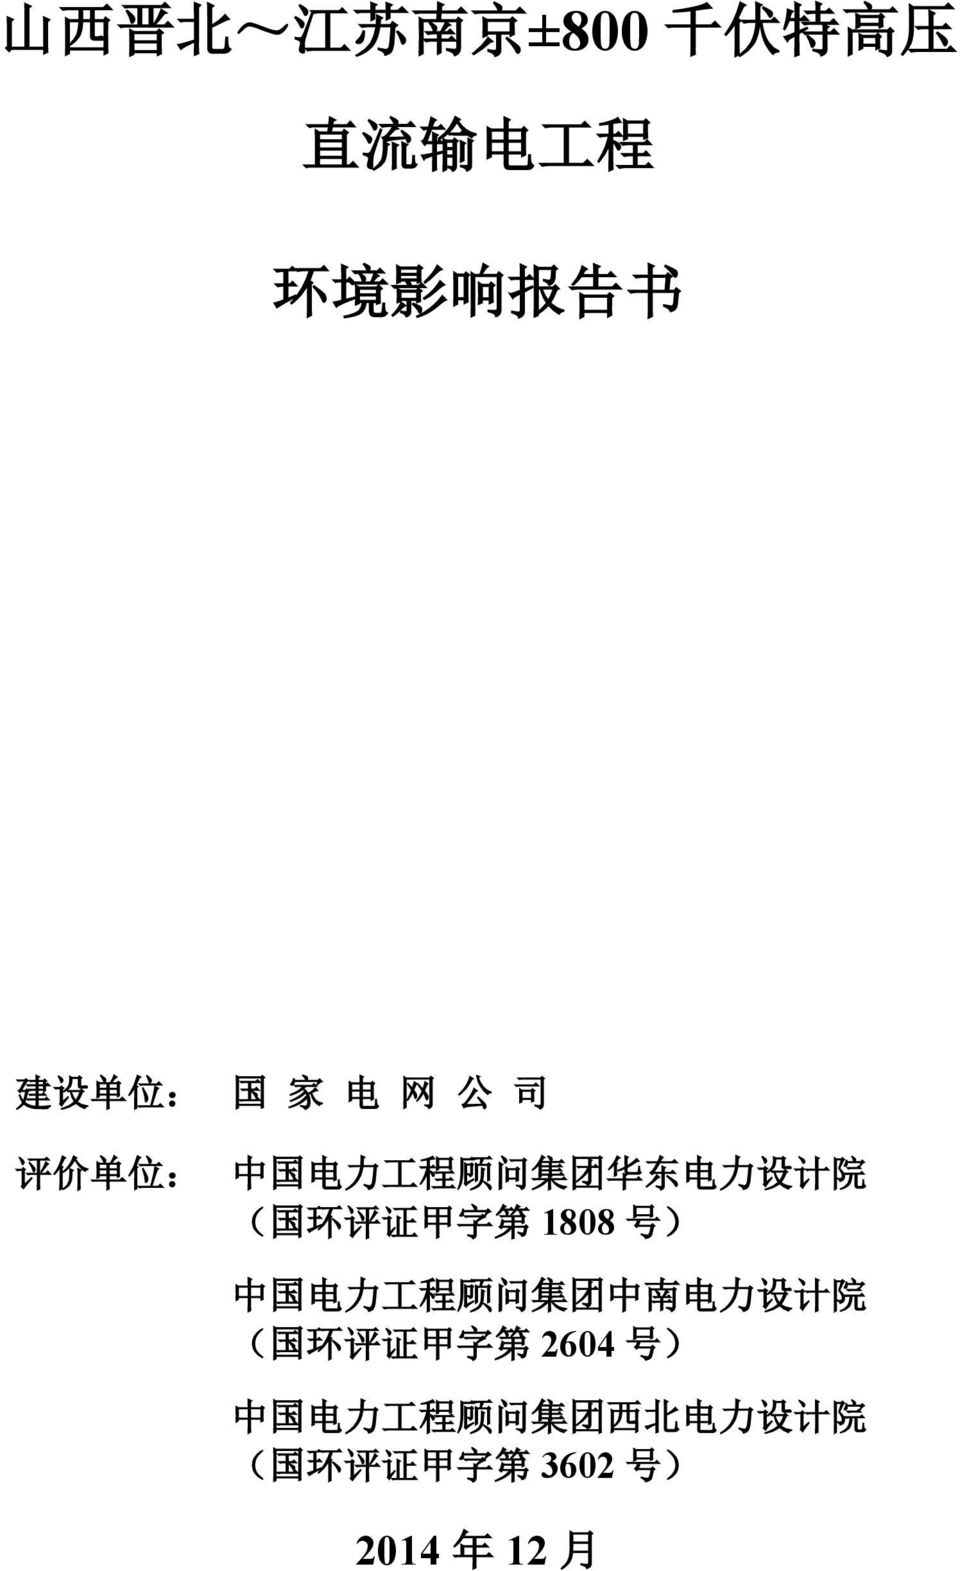 ) 中 国 电 力 工 程 顾 问 集 团 中 南 电 力 设 计 院 ( 国 环 评 证 甲 字 第 2604 号 ) 中 国 电